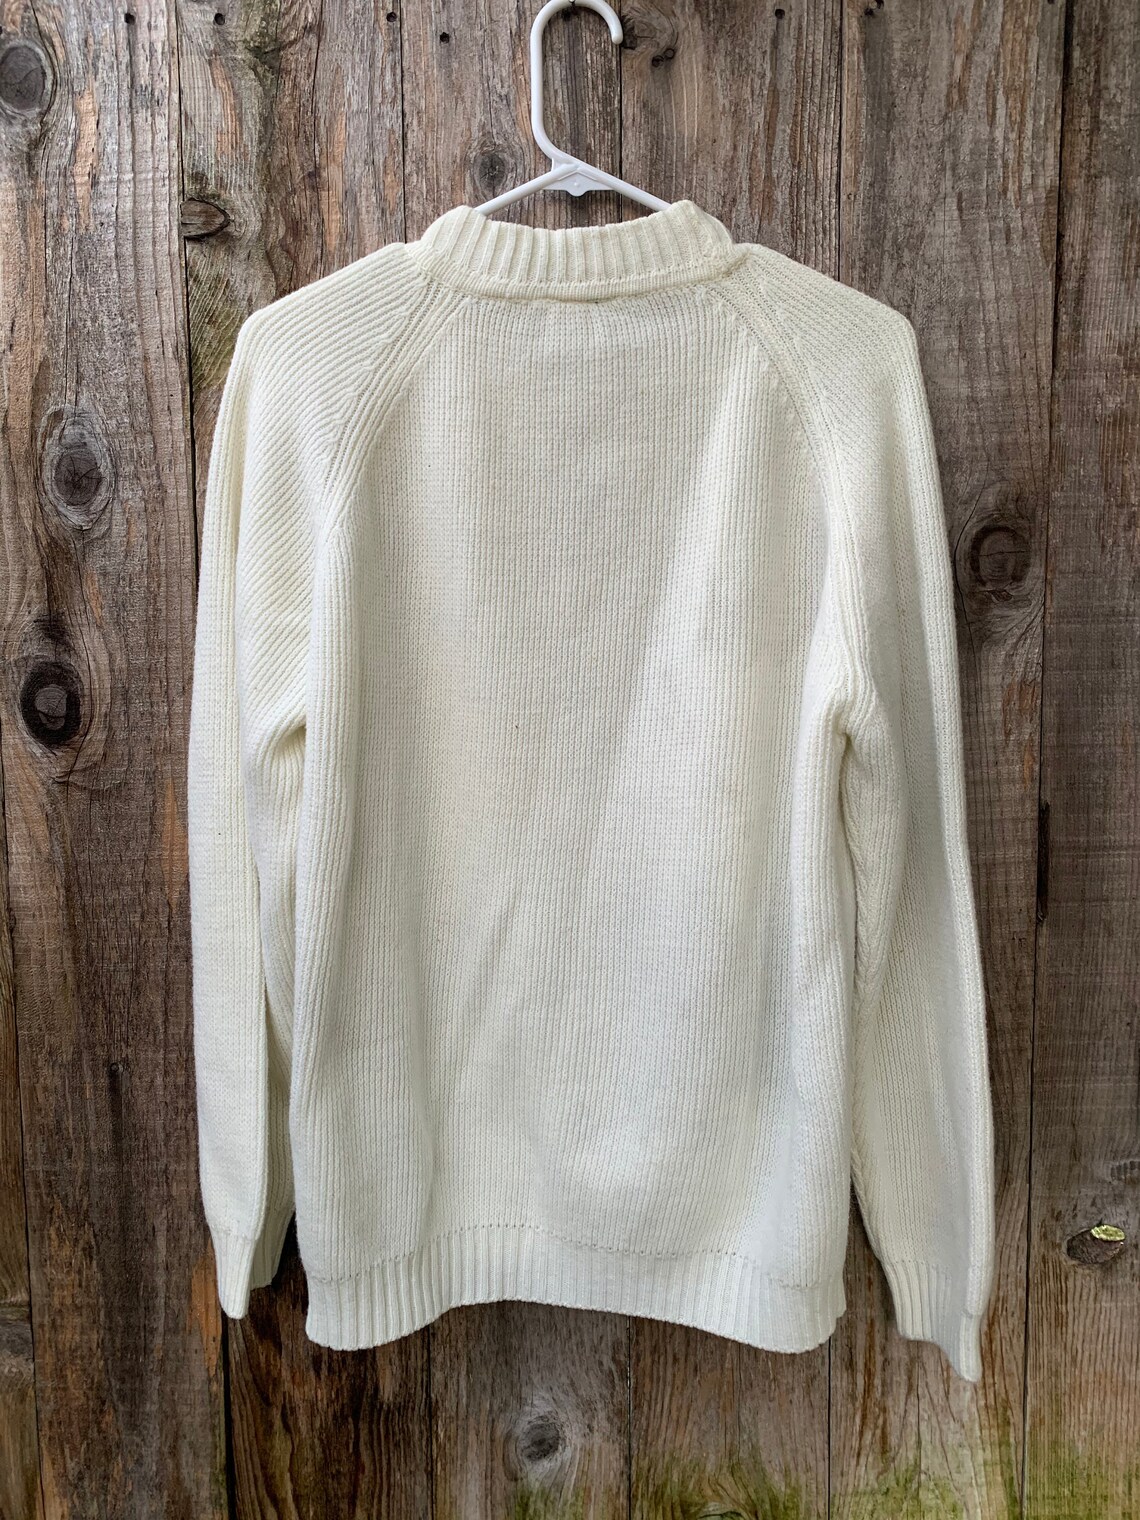 Vintage Acrylic Sweater Fully Fashioned - Etsy